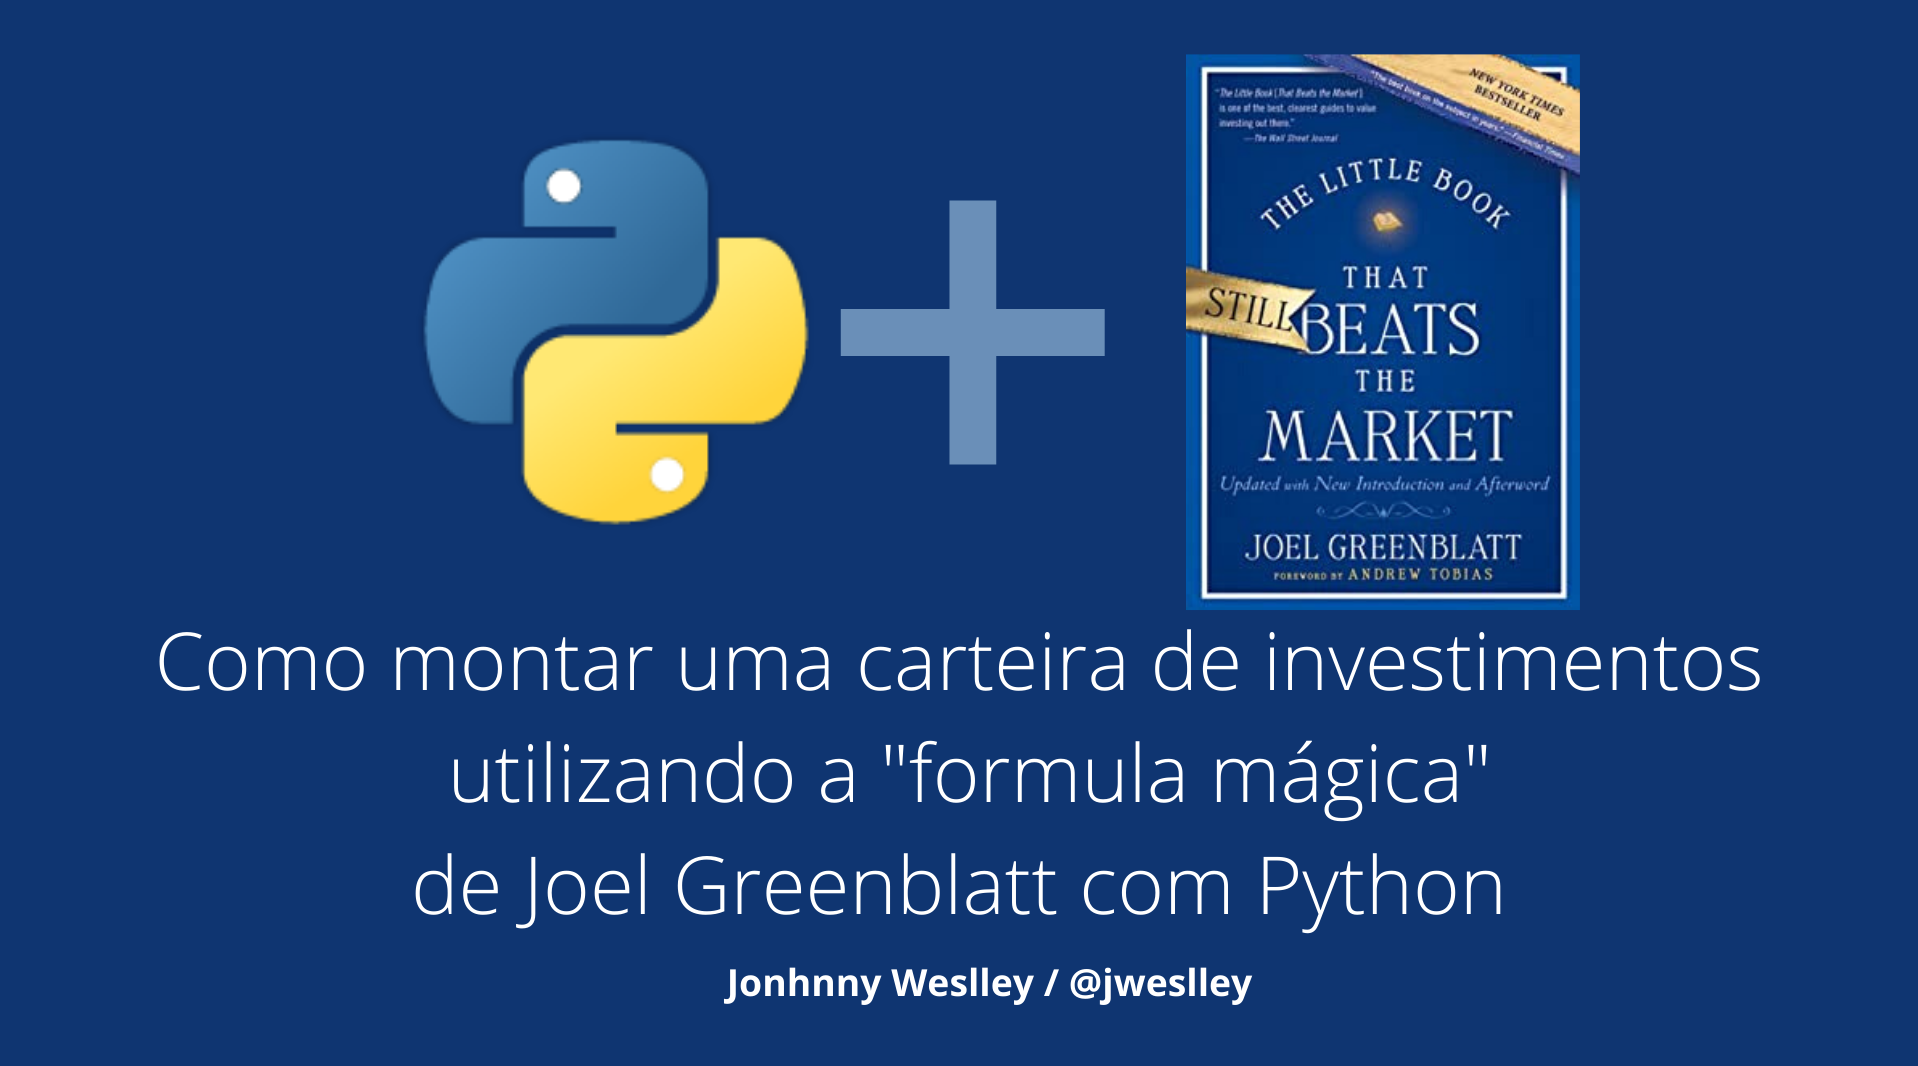 Como montar uma carteira de investimentos utilizando a formula mágica de Joel Greenblatt: Como utilizar Python para fazer scrap de sites para buscar dados, manipula-los e aplicar a formula mágica de Joel Greenblatt para fazer seleção de ações